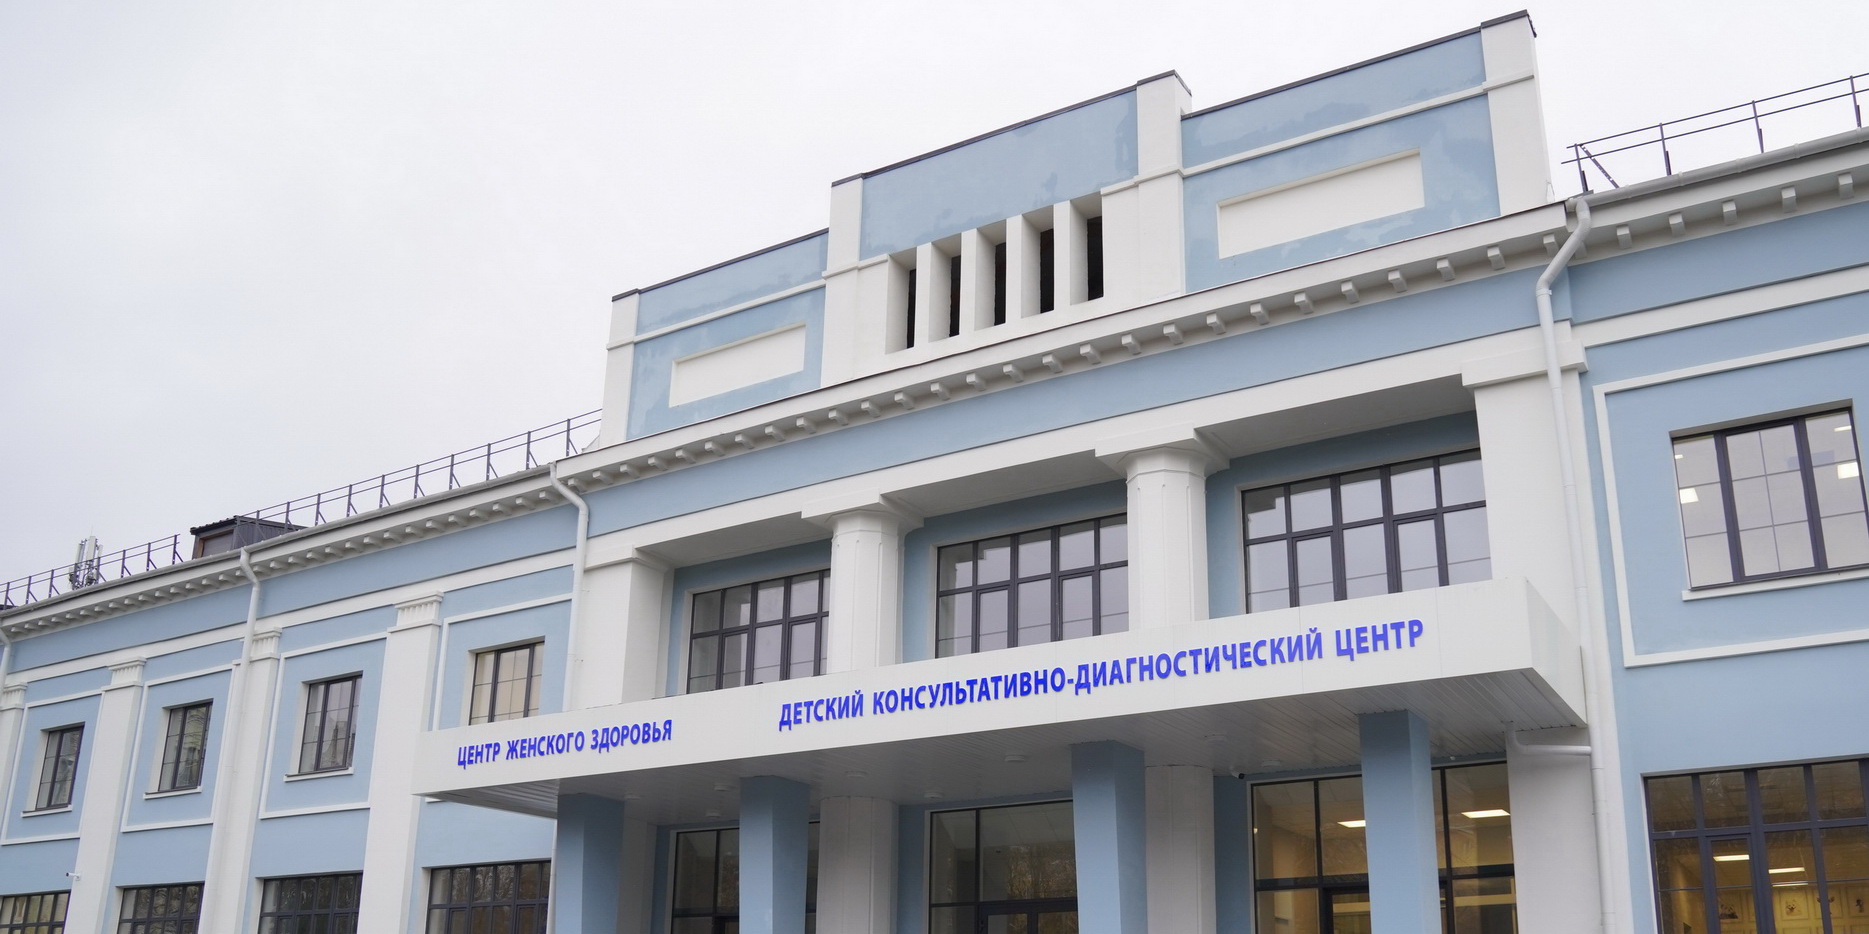 Реконструкция здания для детского консультативно-диагностического центра в Иванове завершена